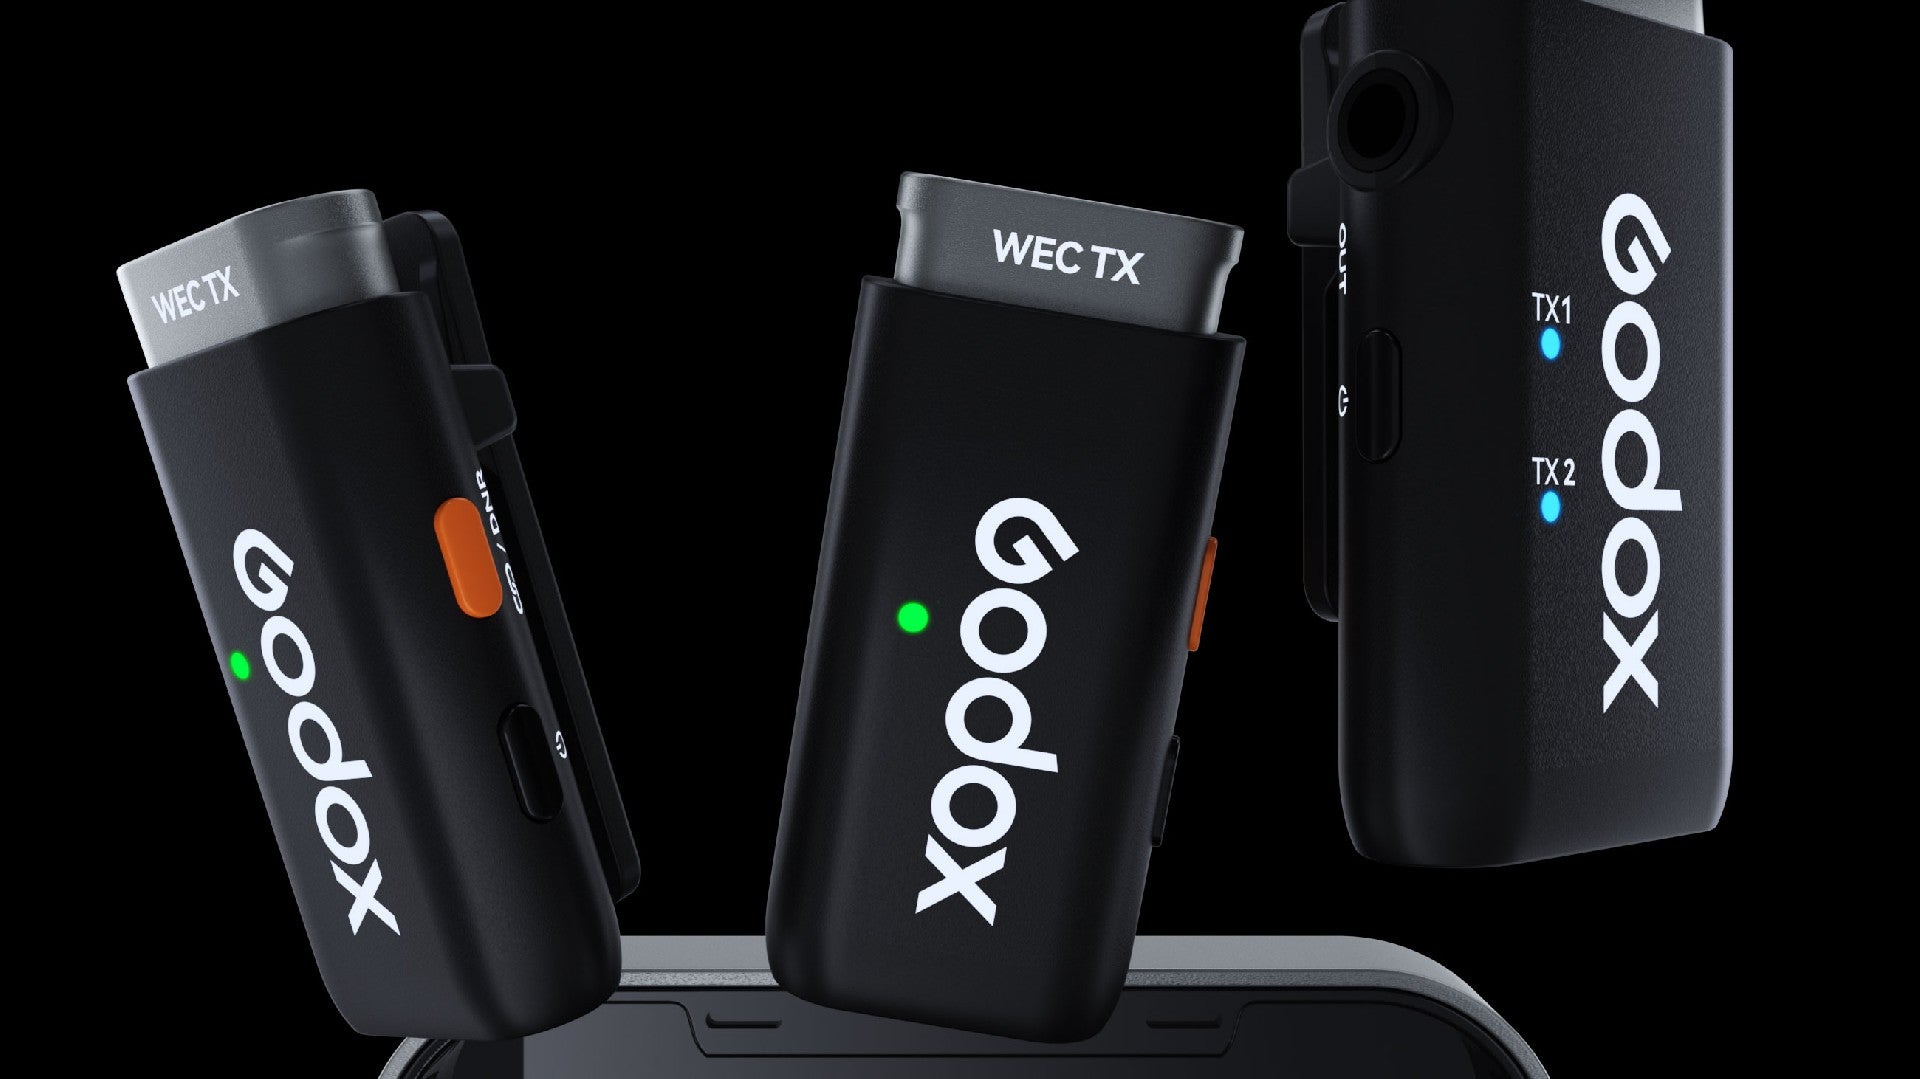 Godox WEC Kit 2 Review